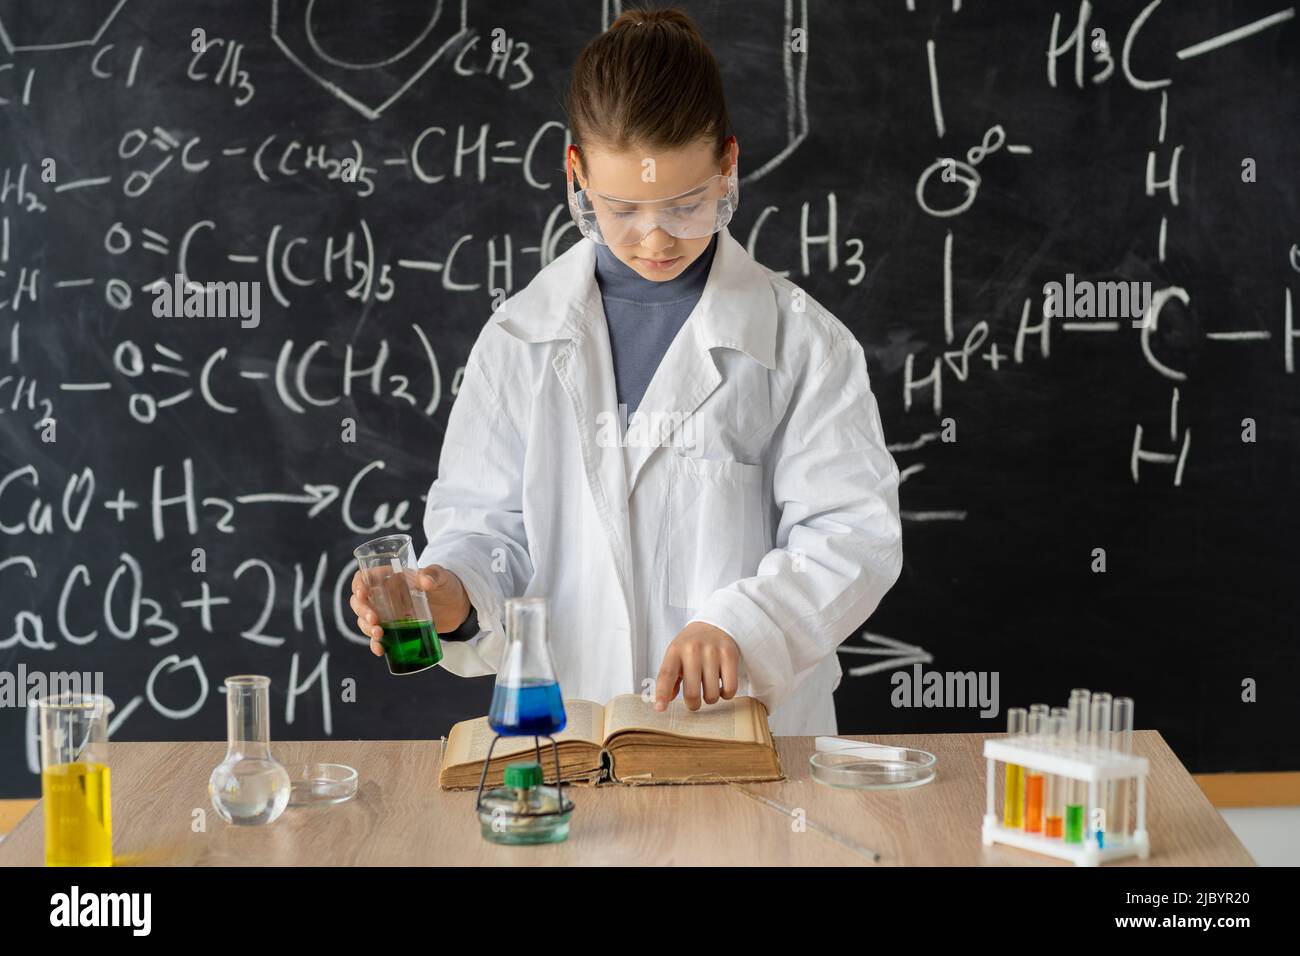 giovane adorabile studentessa ragazza che scrive un risultato di chimica sul libro mentre fa un esperimento scientifico e in piedi nel laboratorio moderno con Foto Stock